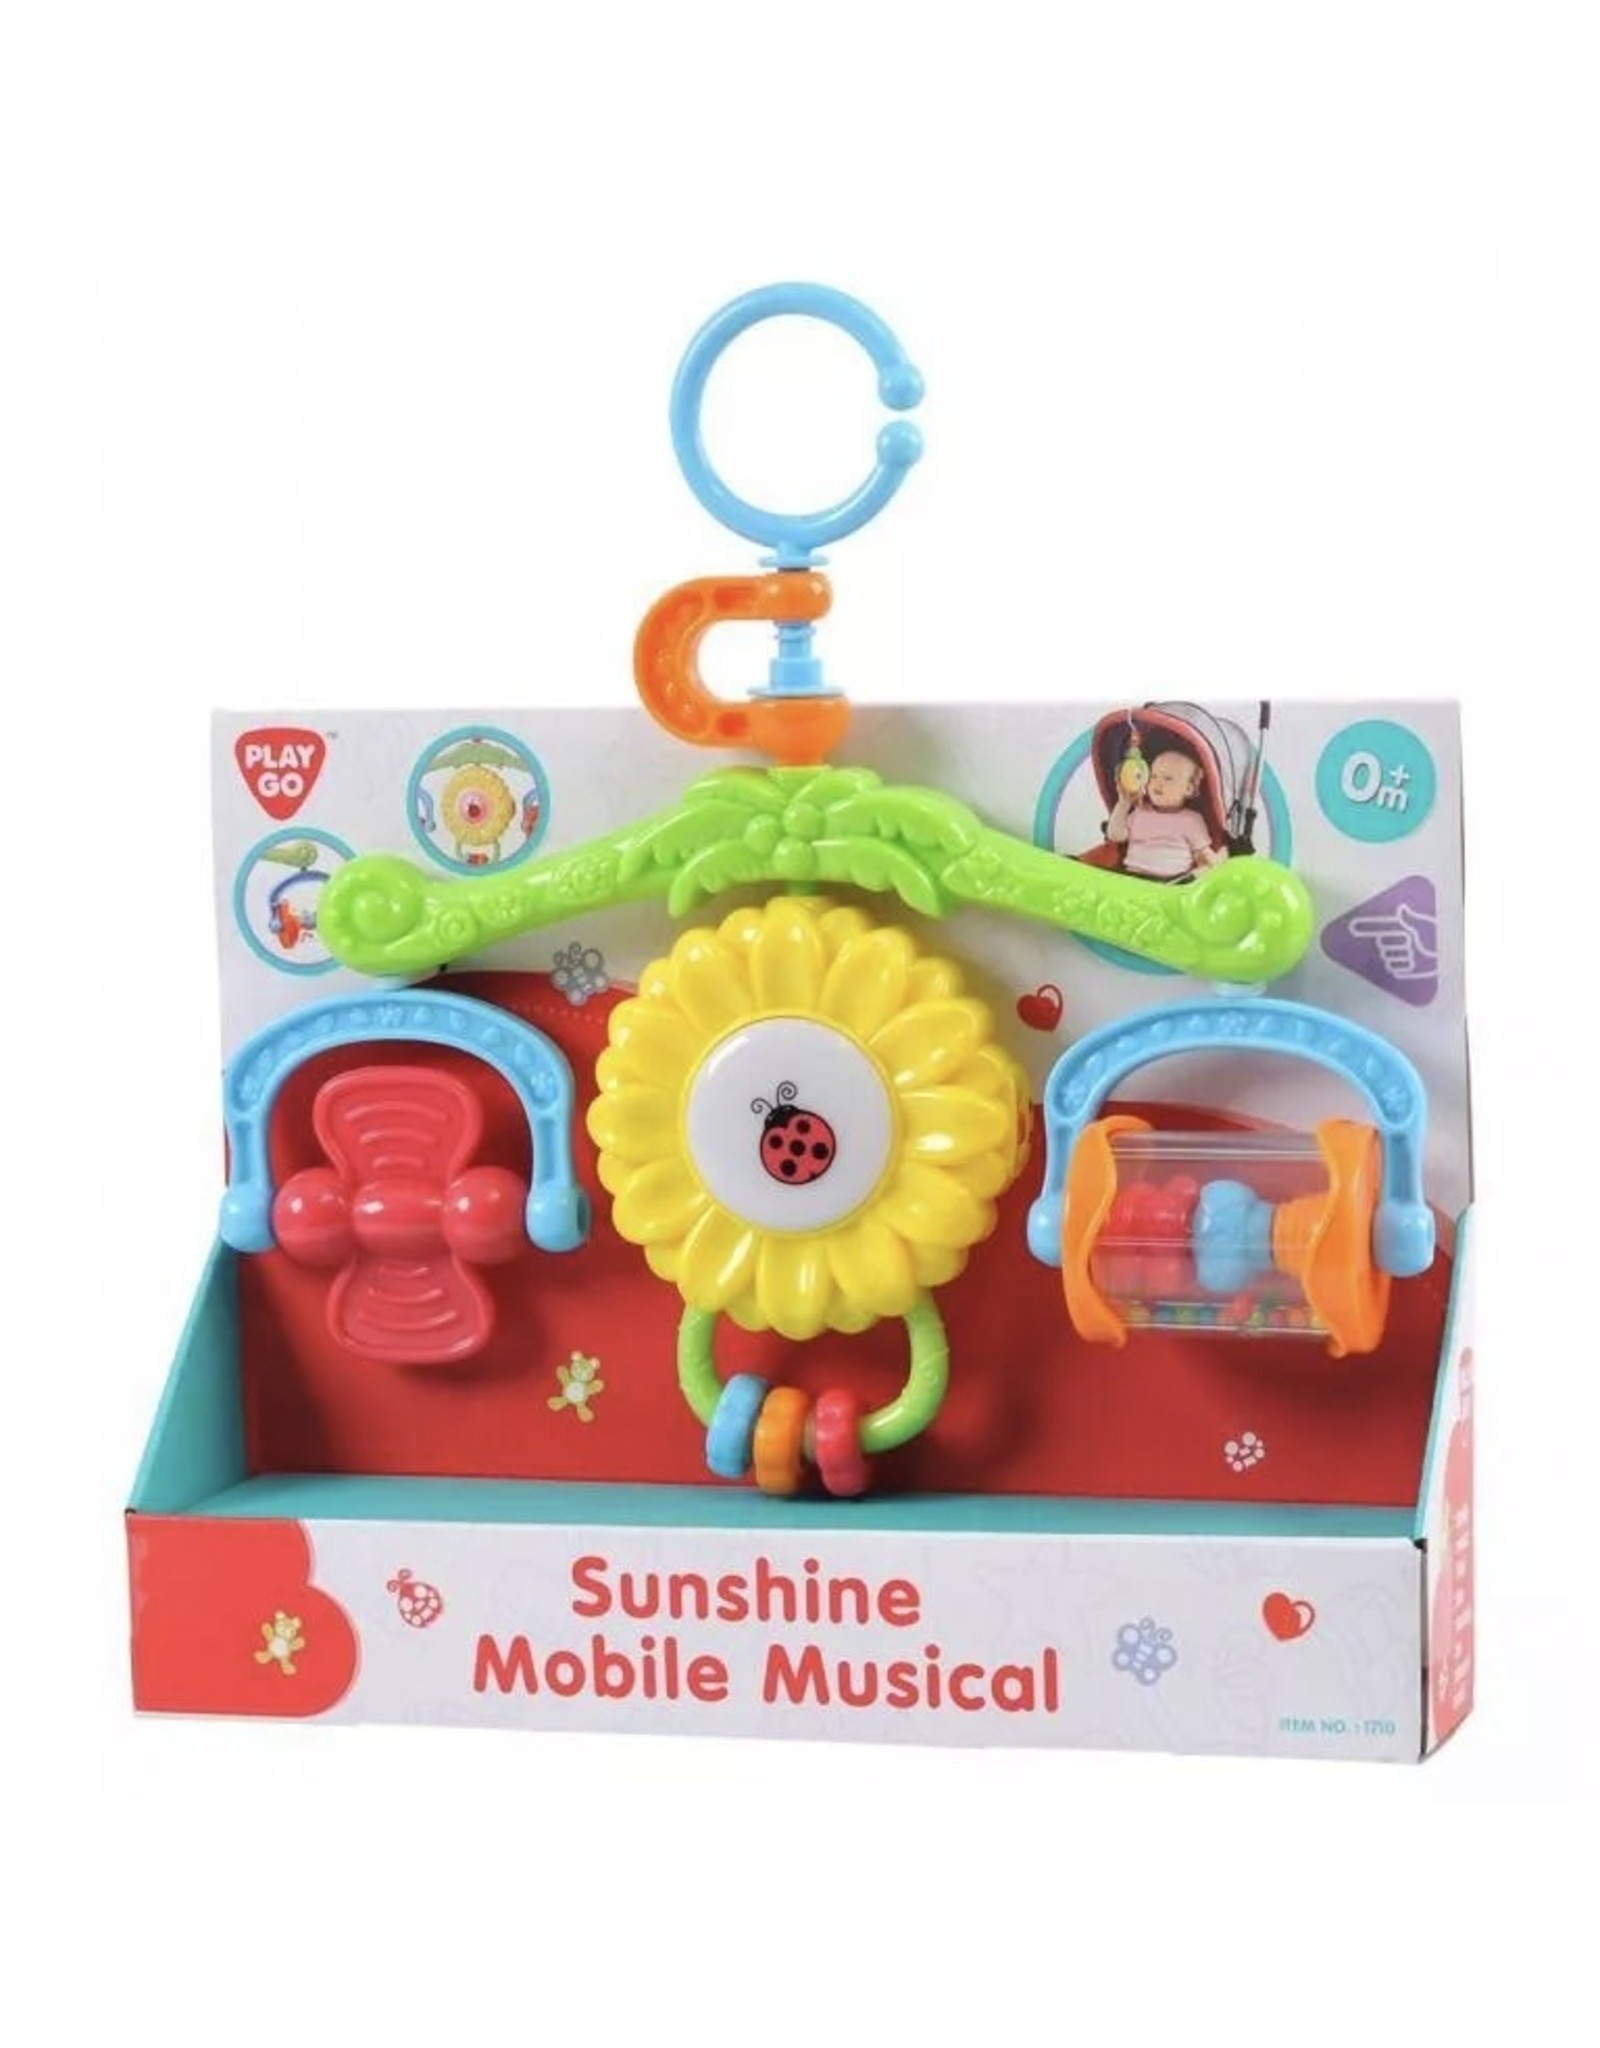 PLAY GO PlayGo Sunshine Mobile Musical